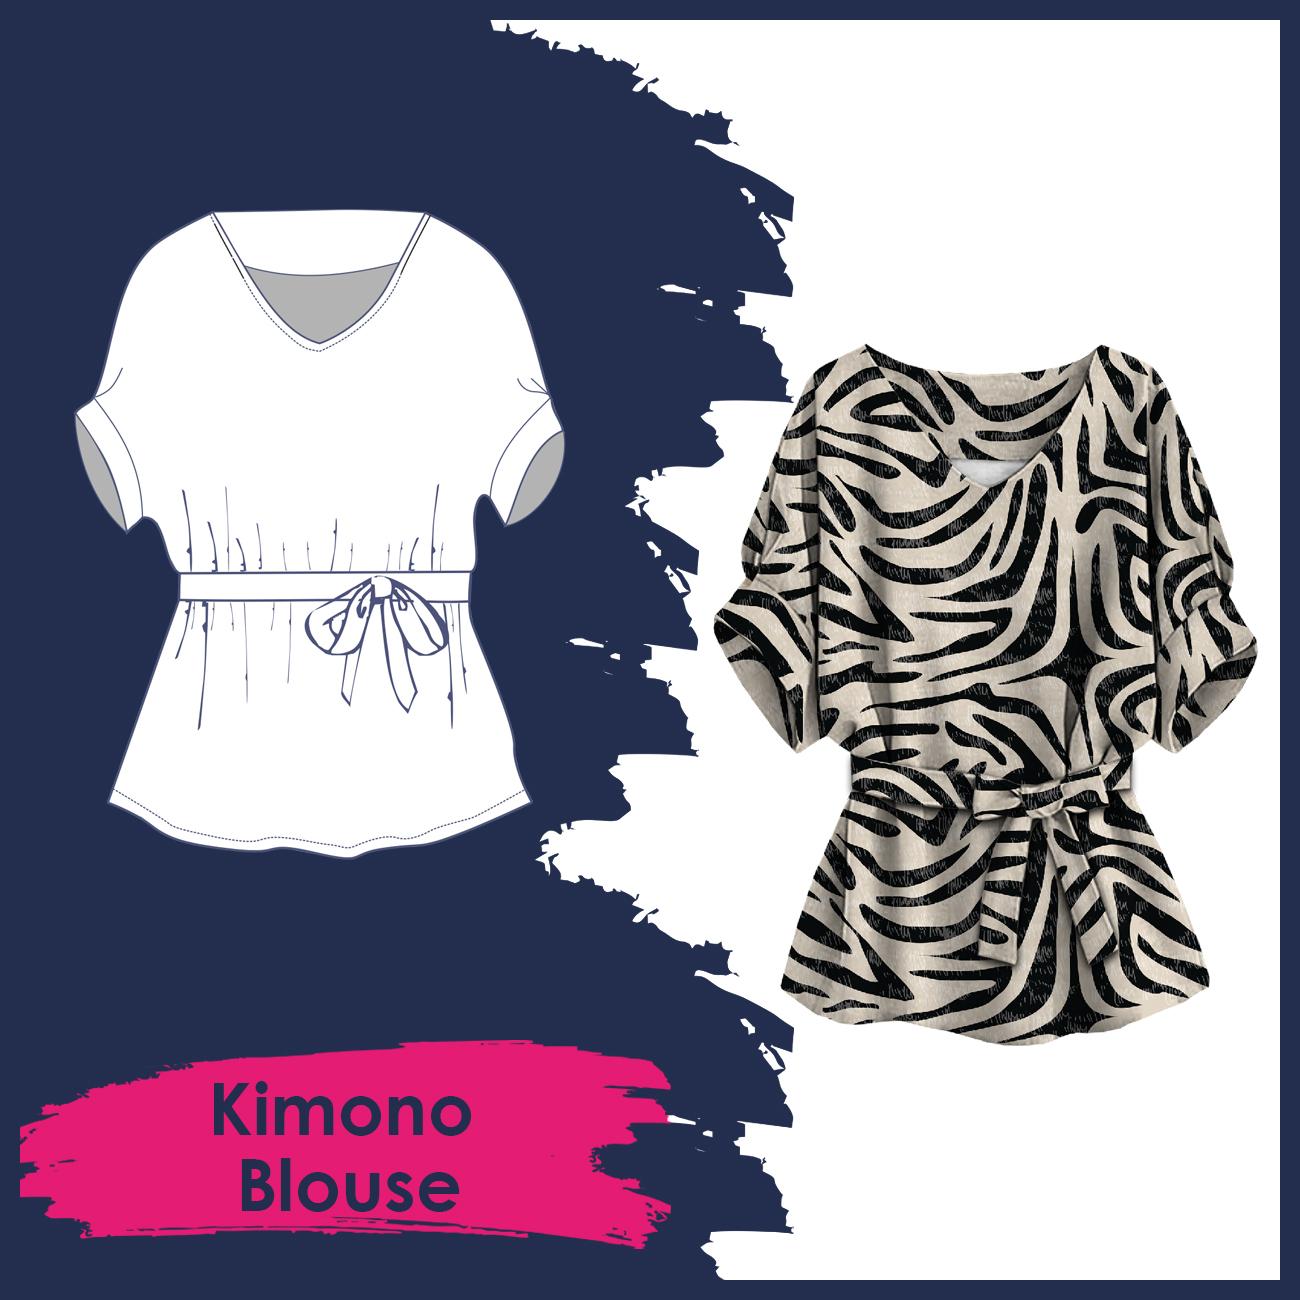 Kimono blouse